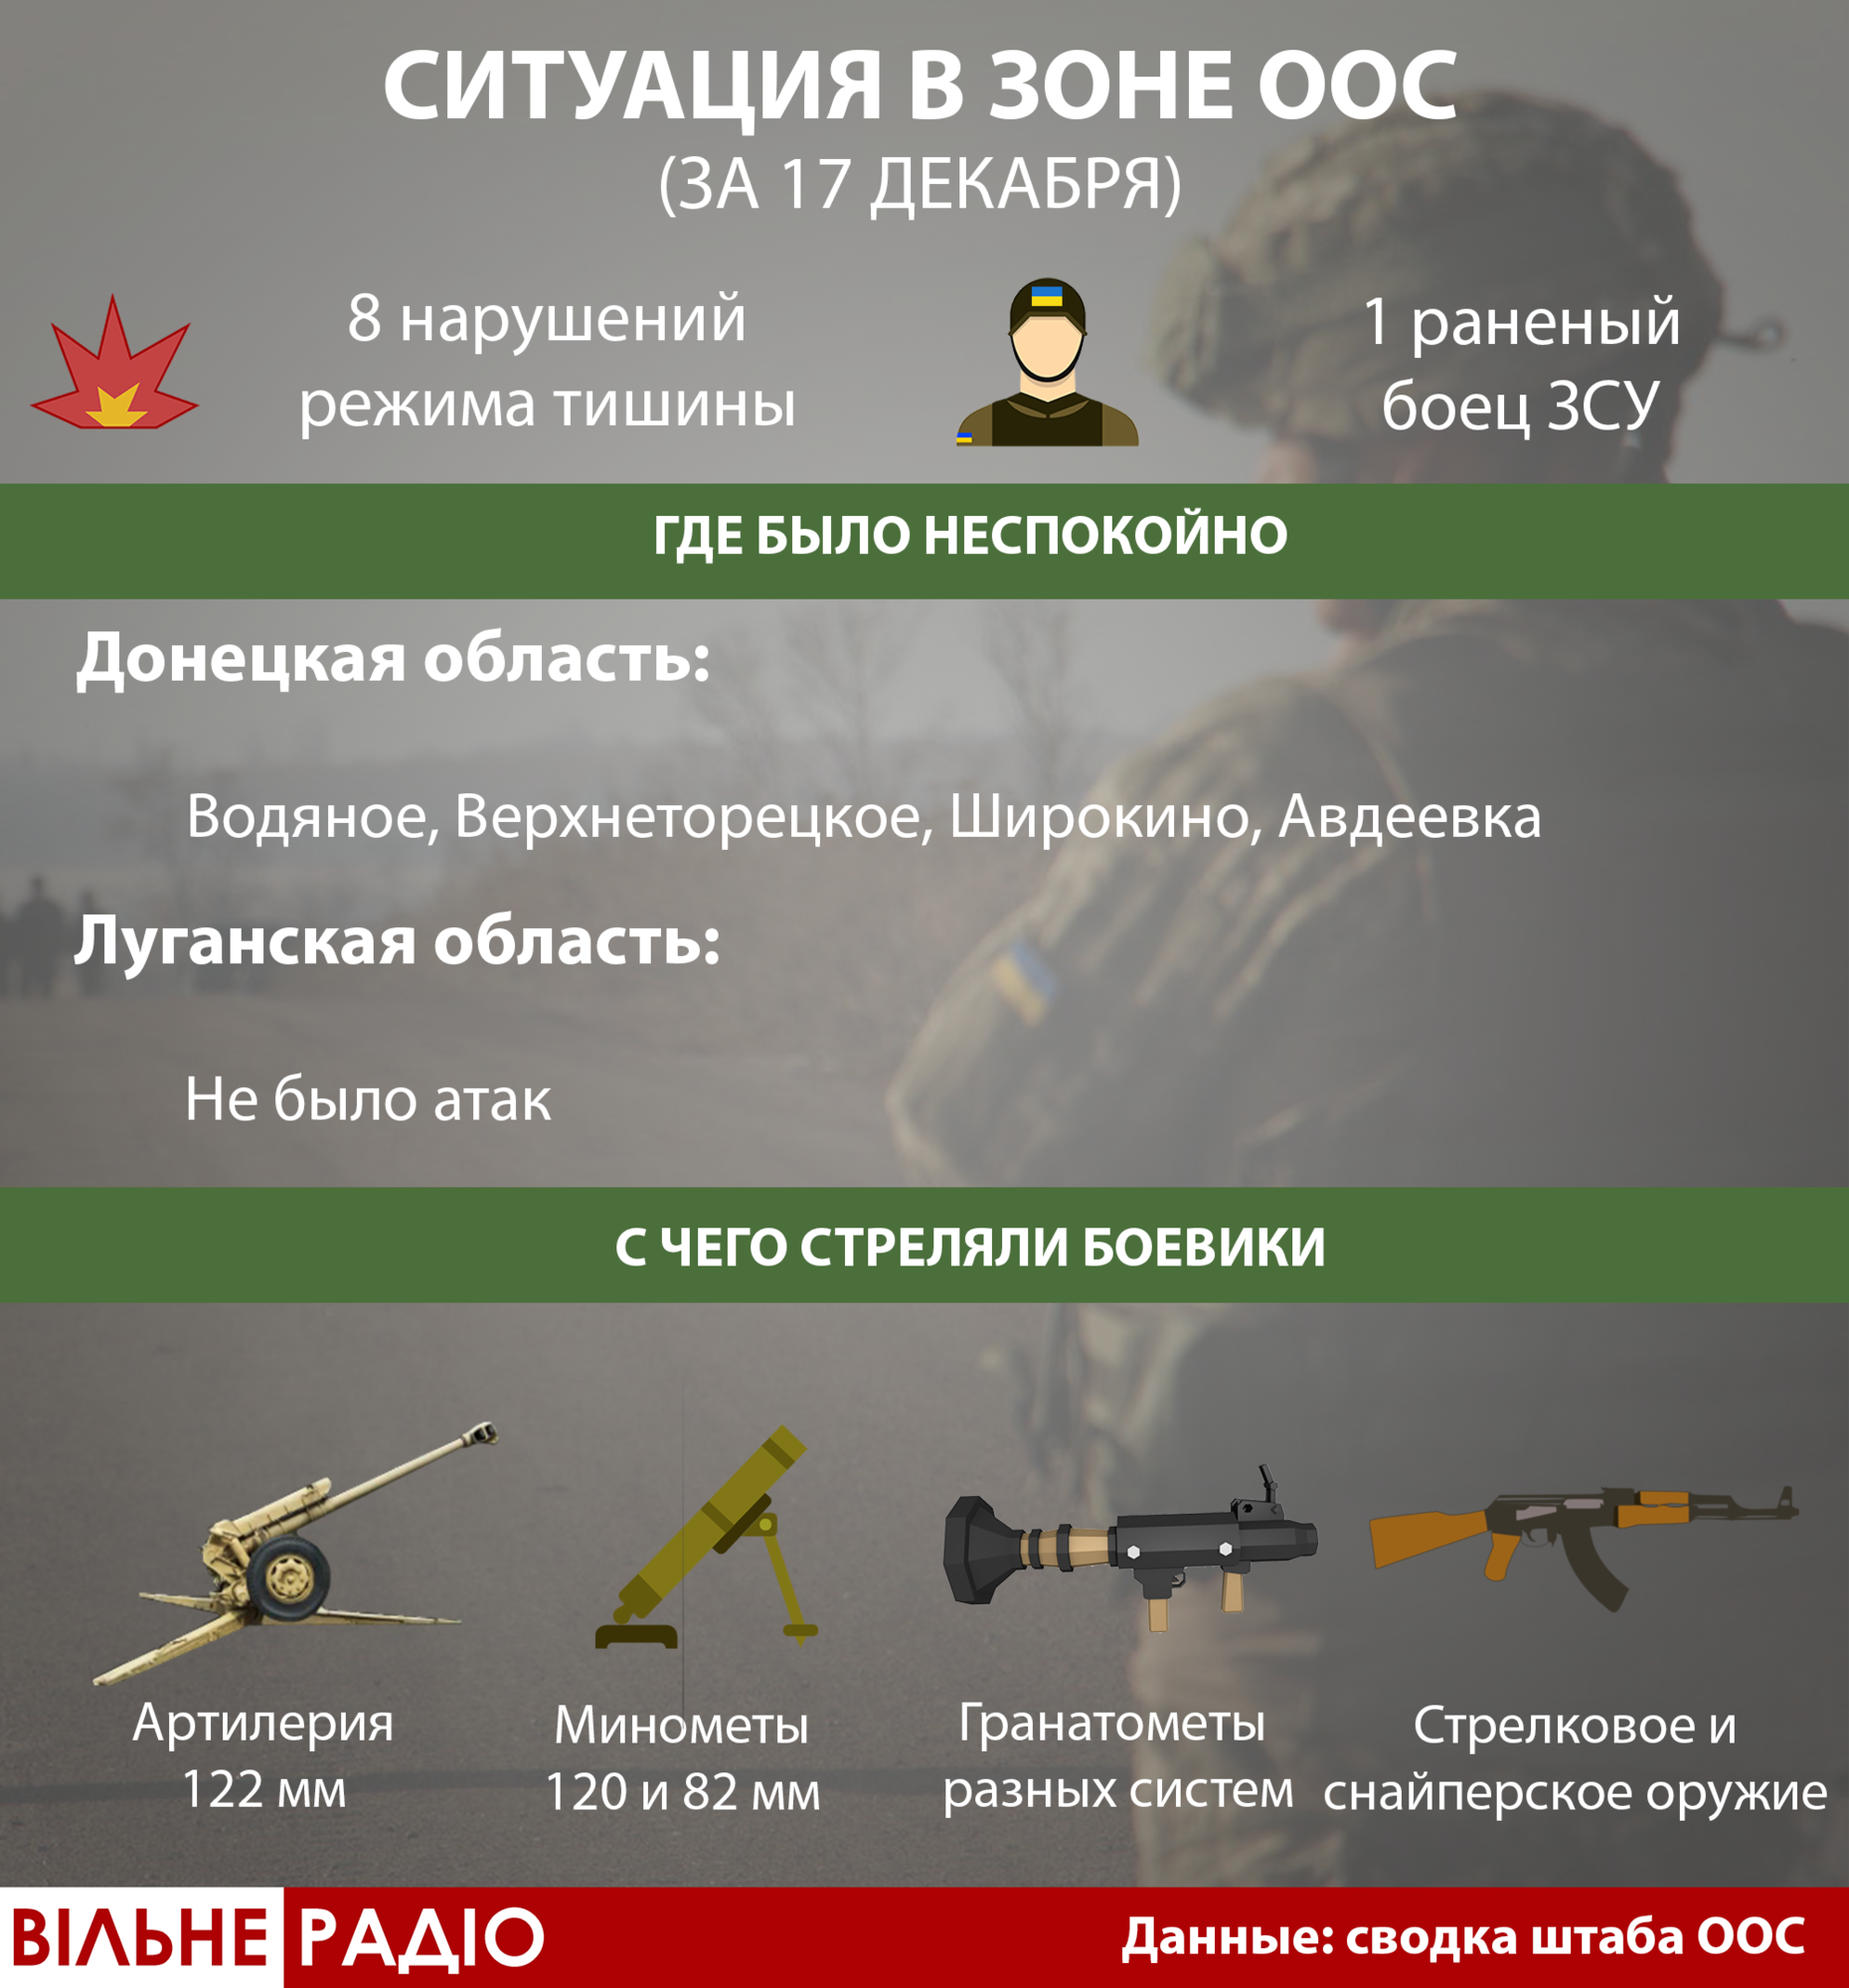 17 декабря боевики ранили украинского военнослужащего. ВСУ дали ответ, — штаб ООС (Инфографика)